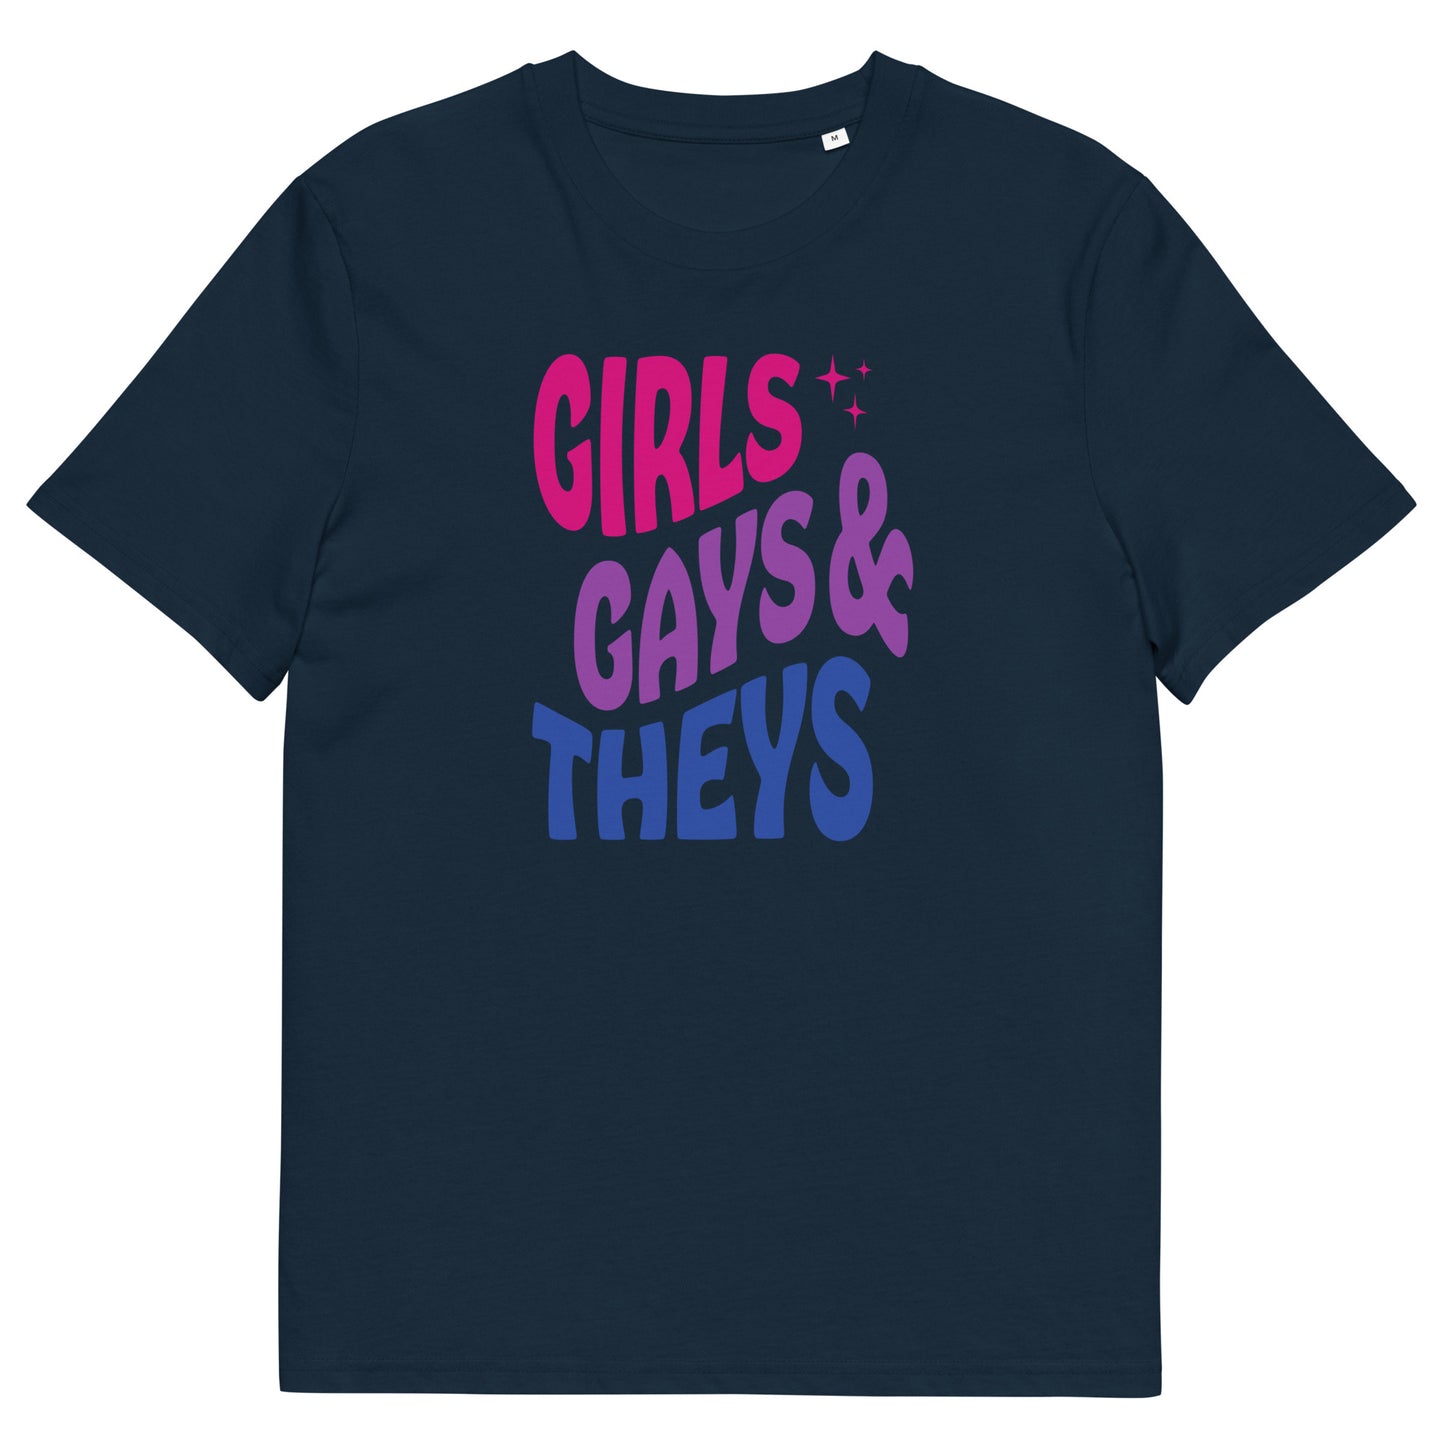 Organic Cotton T-shirt Print: Girls Gays & Theys (Bi)